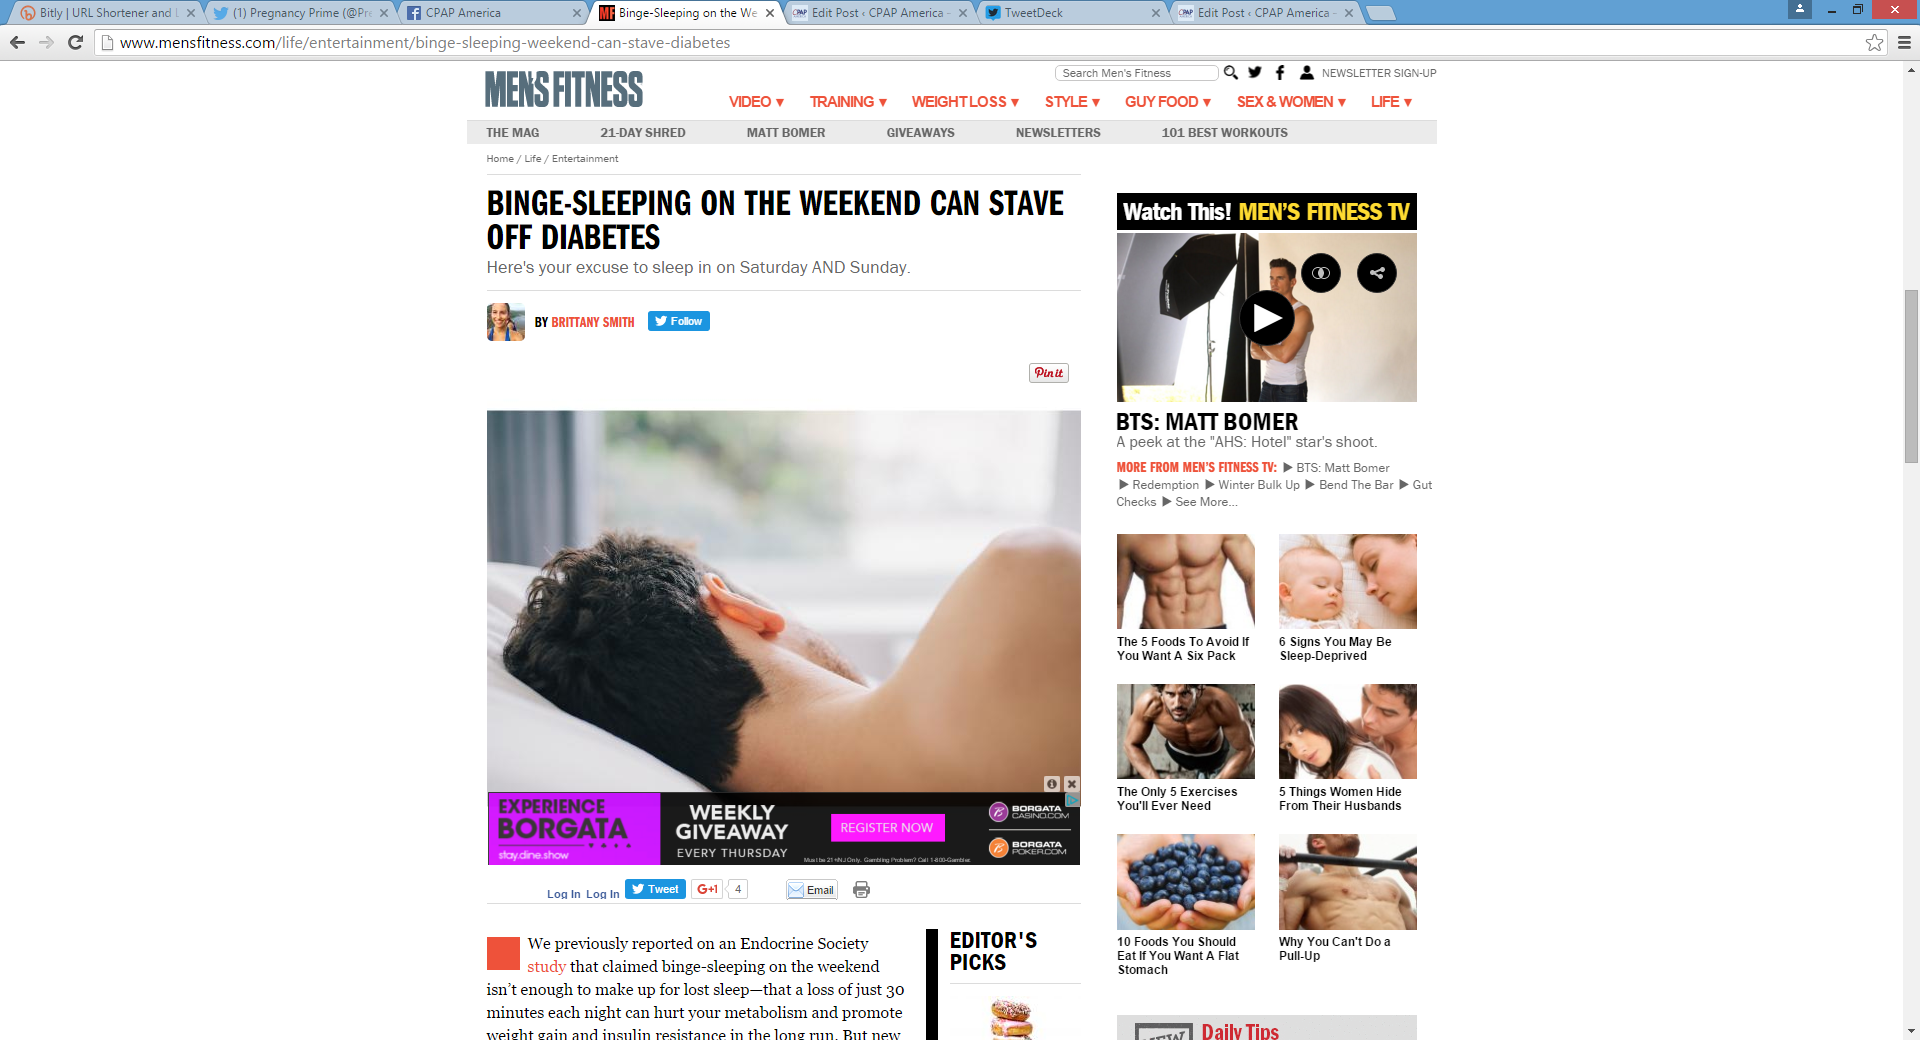 Can Weekend Binge-Sleeping Help Avert Diabetes?